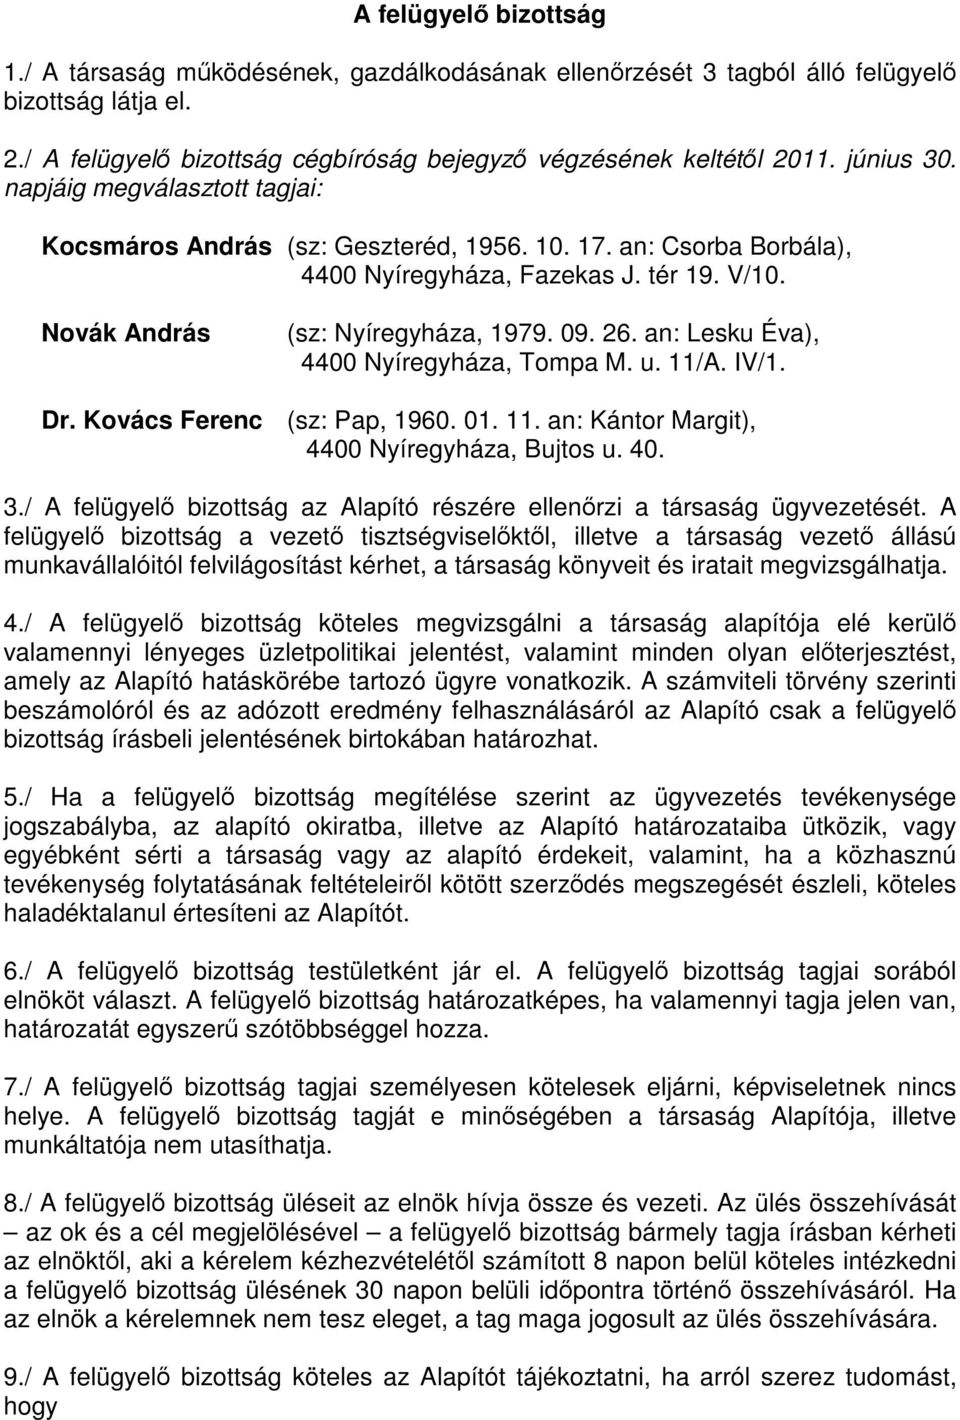 an: Lesku Éva), 4400 Nyíregyháza, Tompa M. u. 11/A. IV/1. Dr. Kovács Ferenc (sz: Pap, 1960. 01. 11. an: Kántor Margit), 4400 Nyíregyháza, Bujtos u. 40. 3.